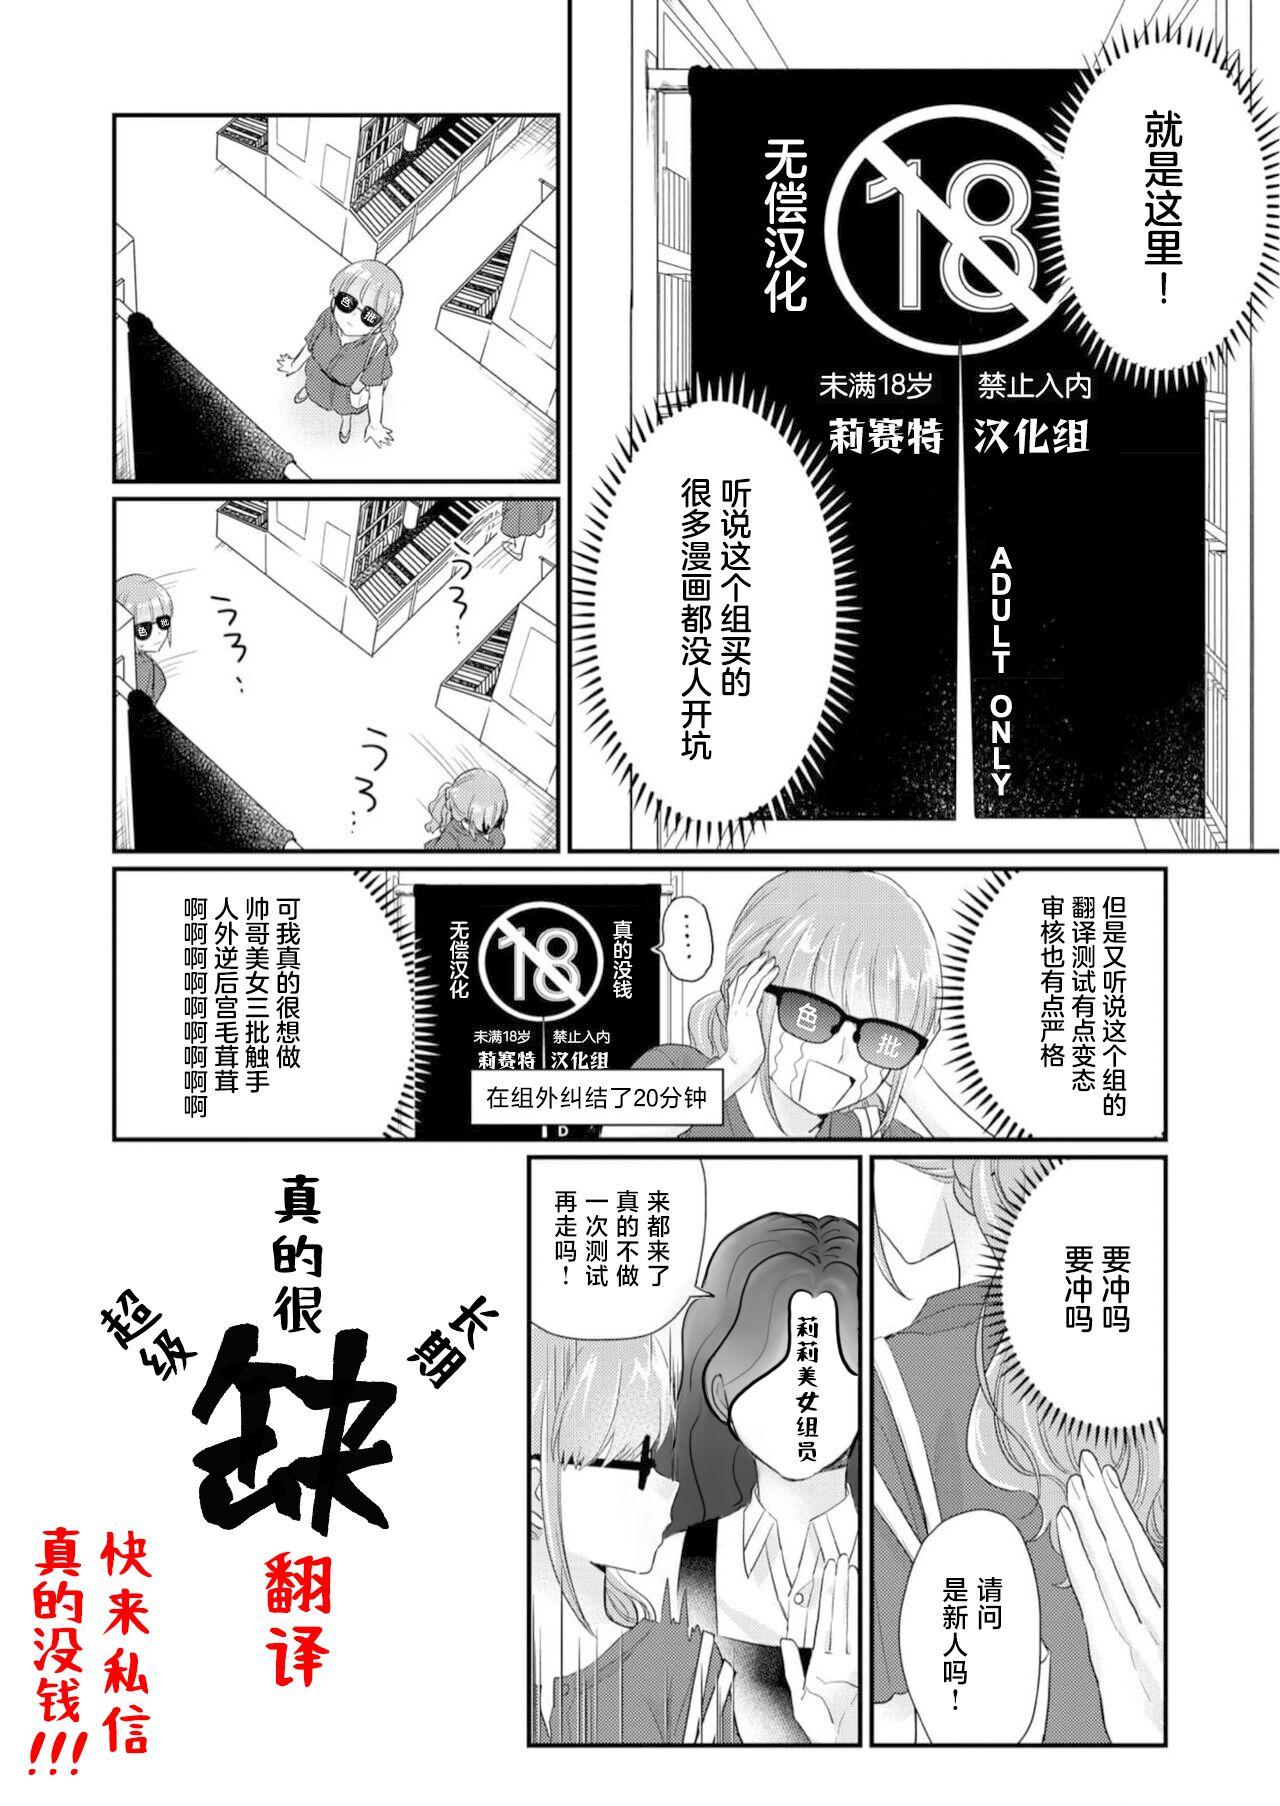 Made zenshin no taieki ga arukoru ni naru kibyo | 全身体液变为酒液的奇病 - Fairy tail Missionary Position Porn - Page 9